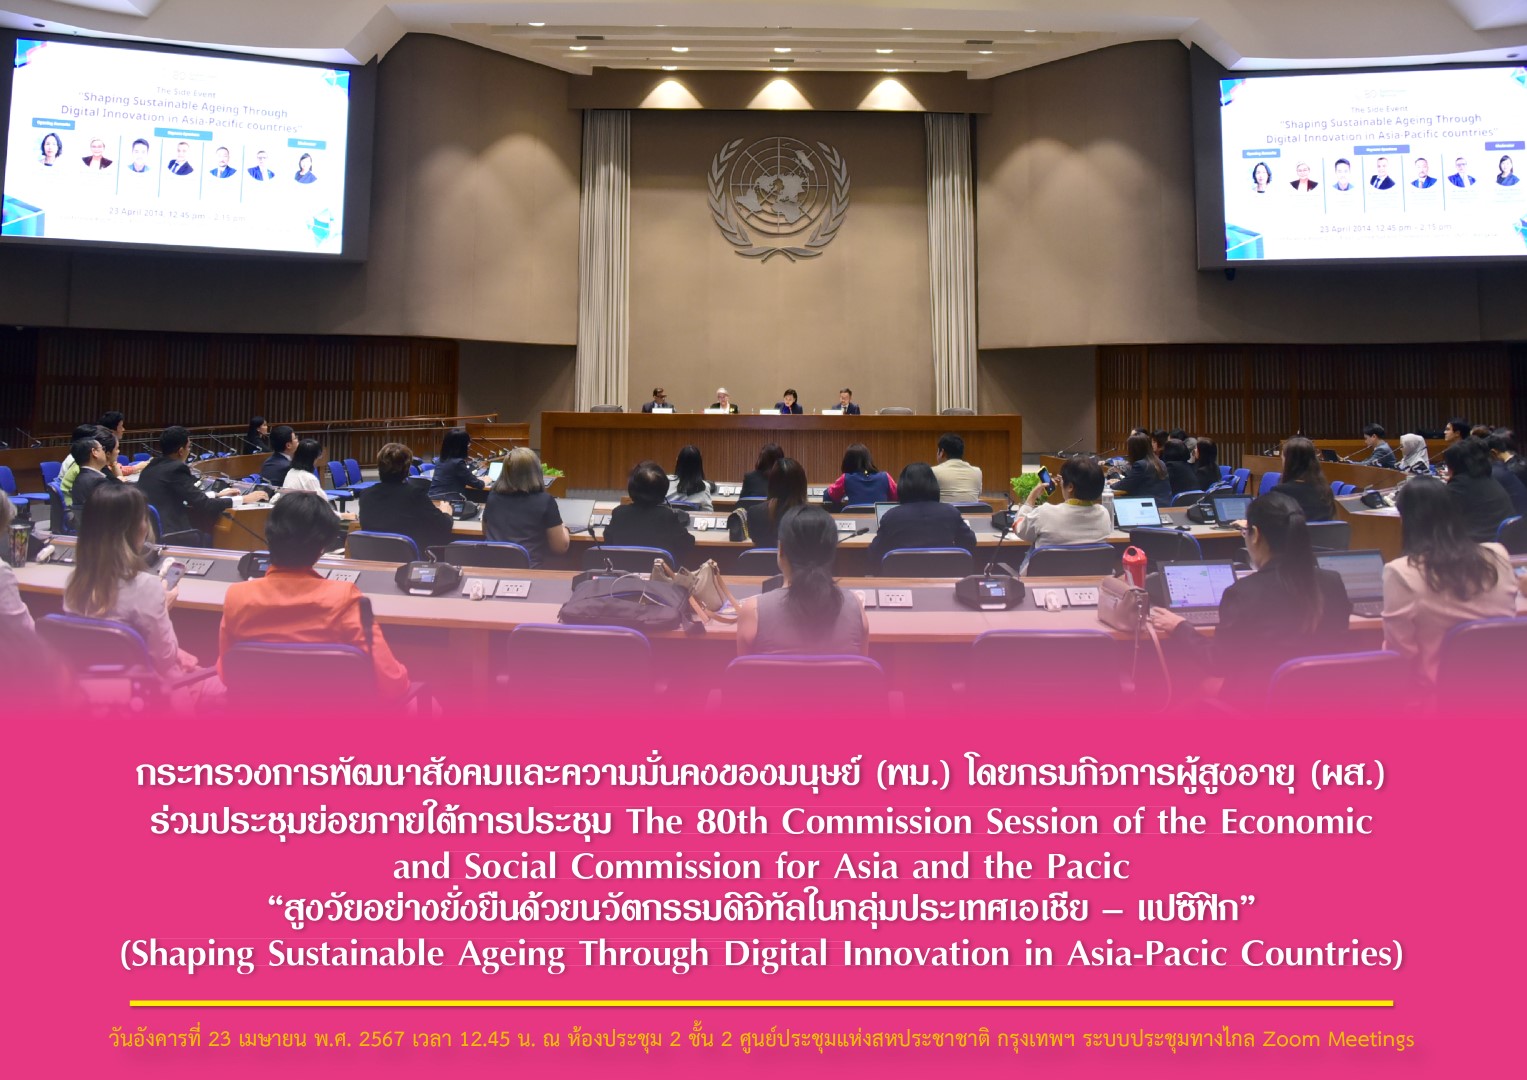 พม. โดยกรมกิจการผู้สูงอายุ (ผส.) ร่วมประชุมย่อยภายใต้การประชุม The 80th Commission Session of the Economic and Social Commission for Asia and the Pacific “สูงวัยอย่างยั่งยืนด้วยนวัตกรรมดิจิทัล ฯ